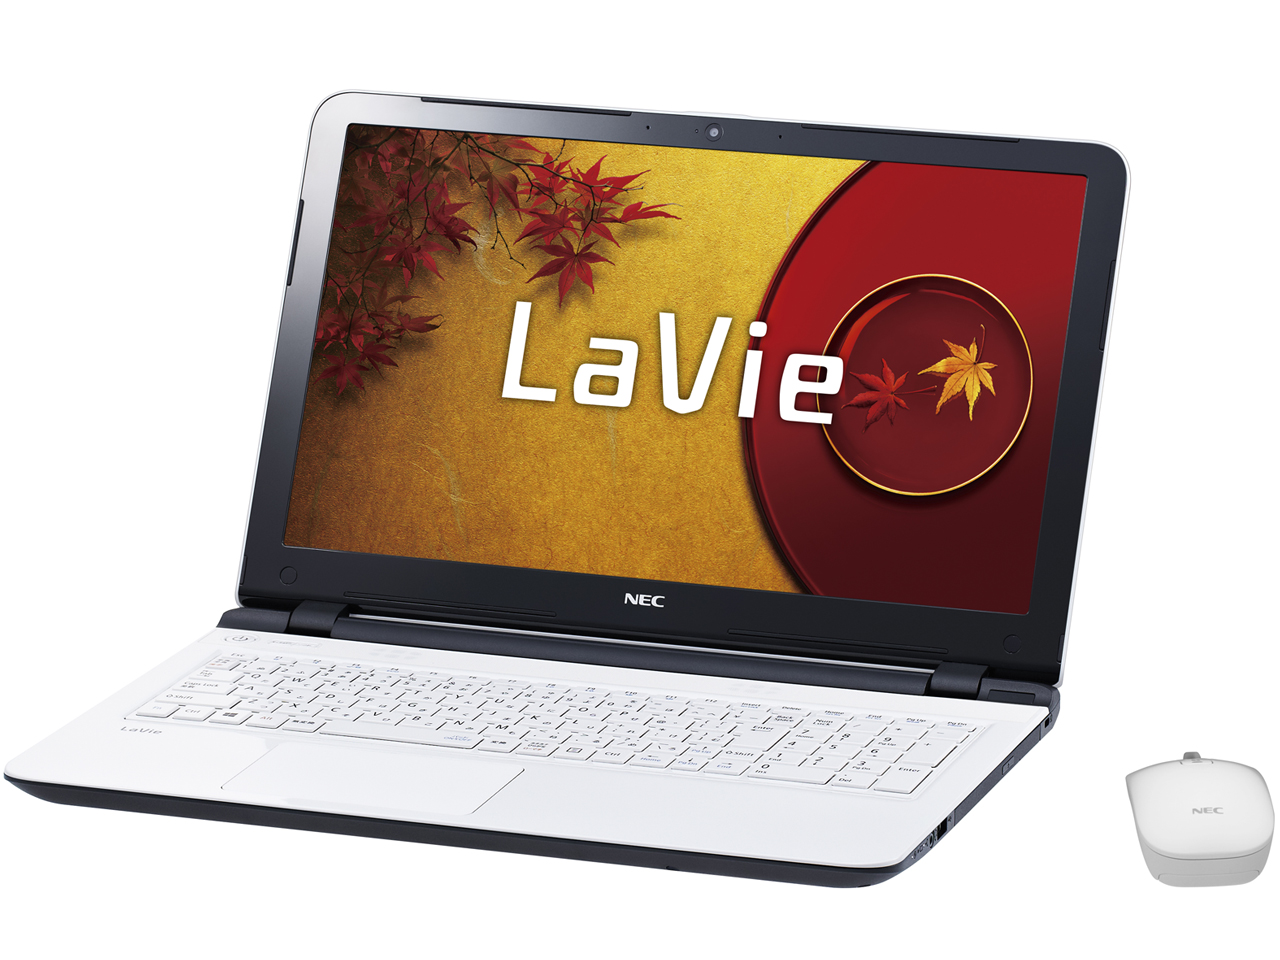 LaVie S LS150/TSW PC-LS150TSW [エクストラホワイト]の価格 【NEC】と